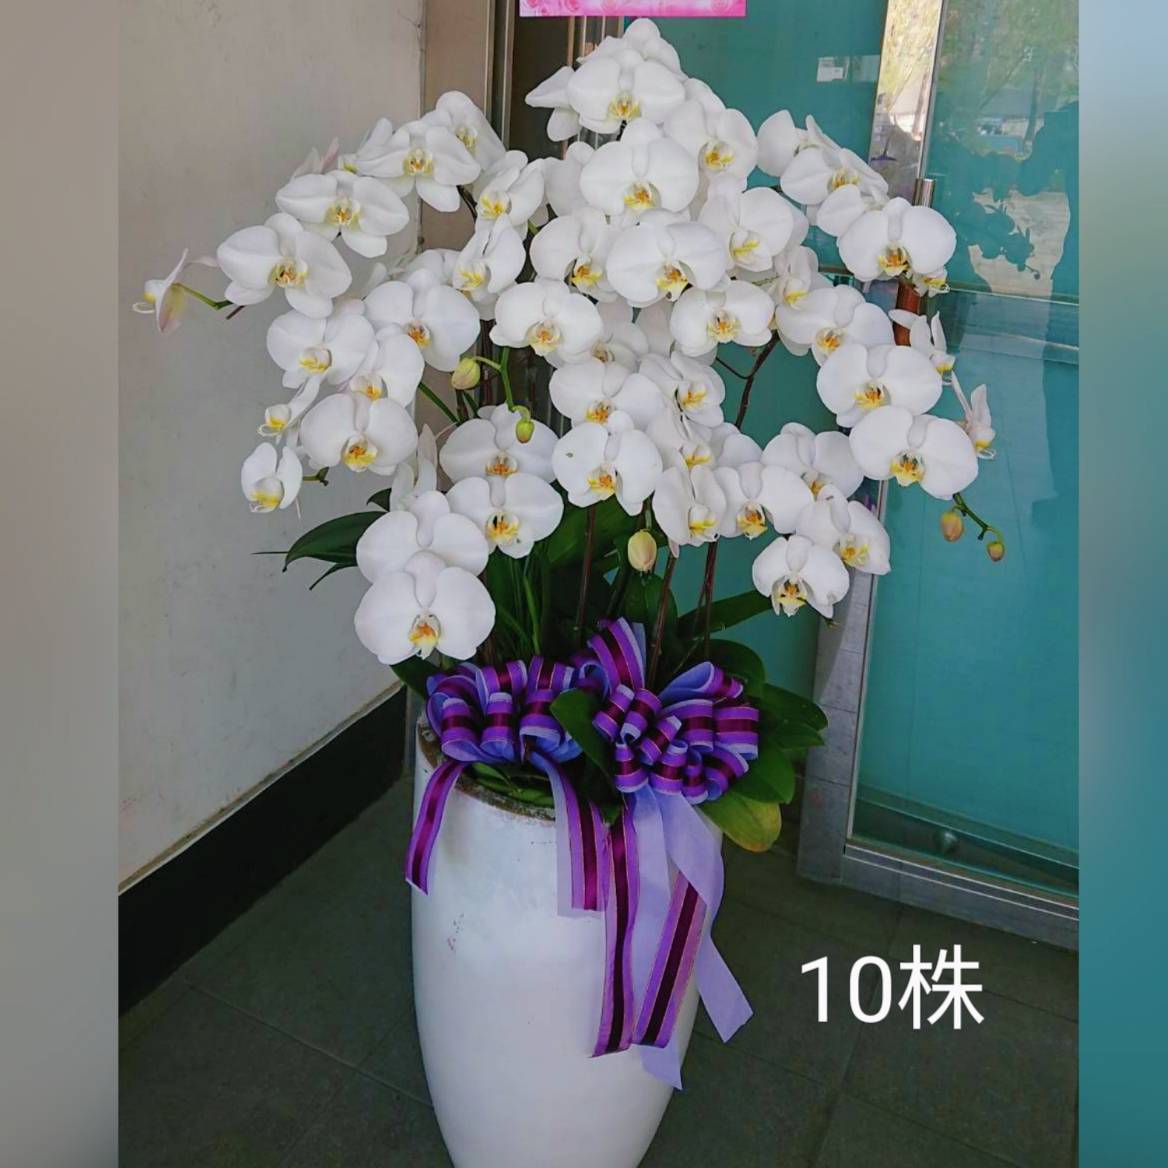 10株蘭花盆景(白)(限八德安樂園)